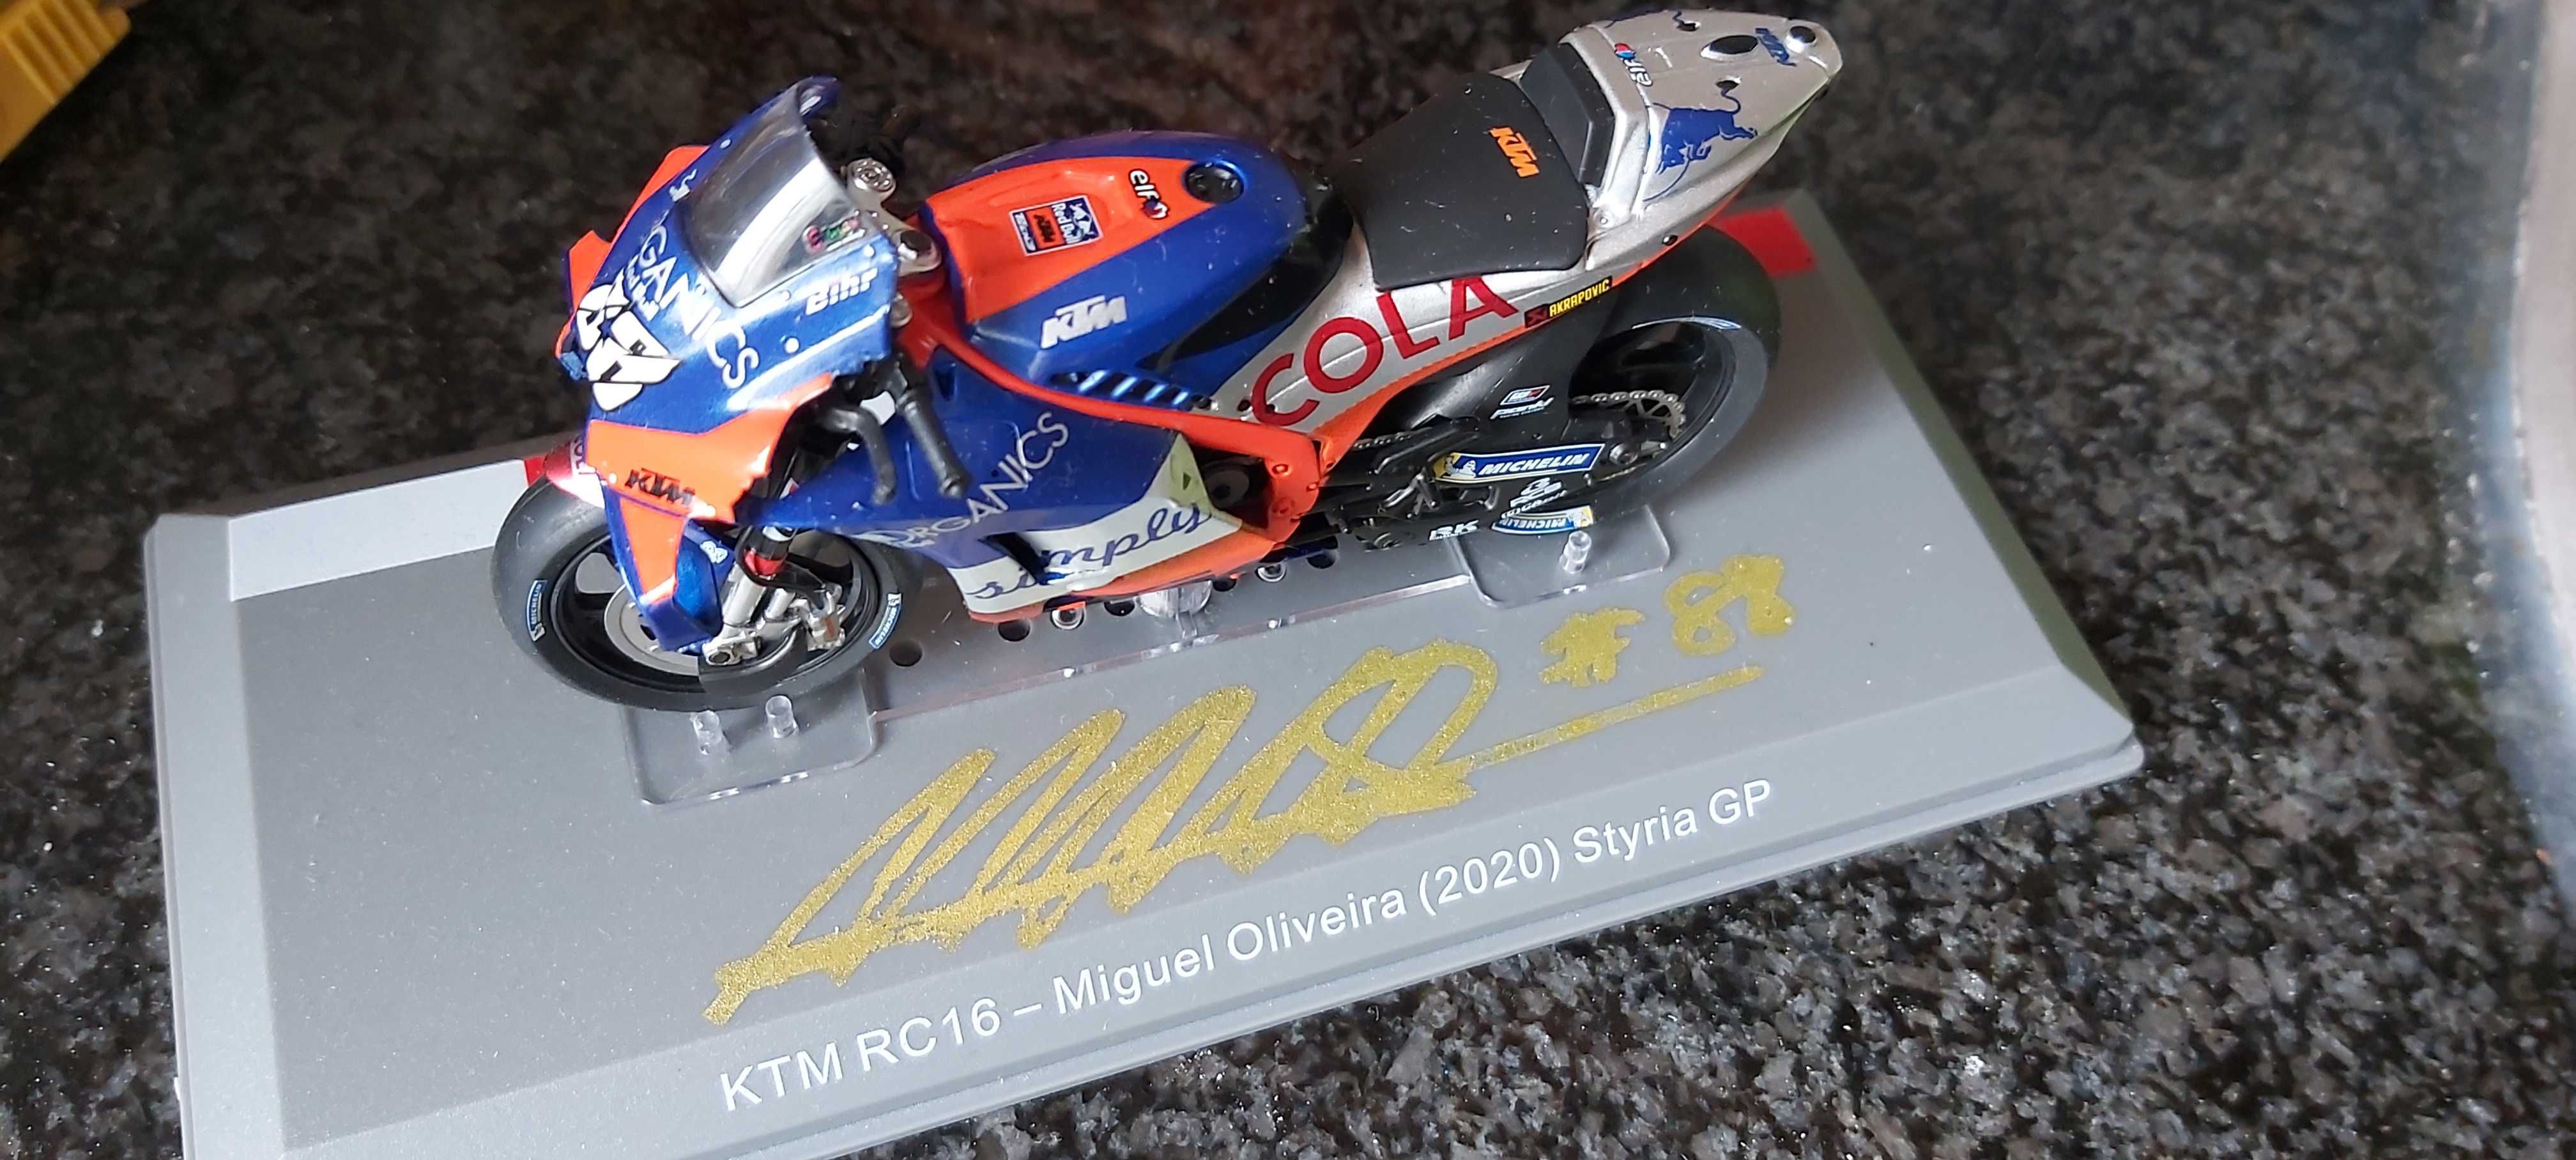 Moto Miguel Oliveira autografada pelo próprio